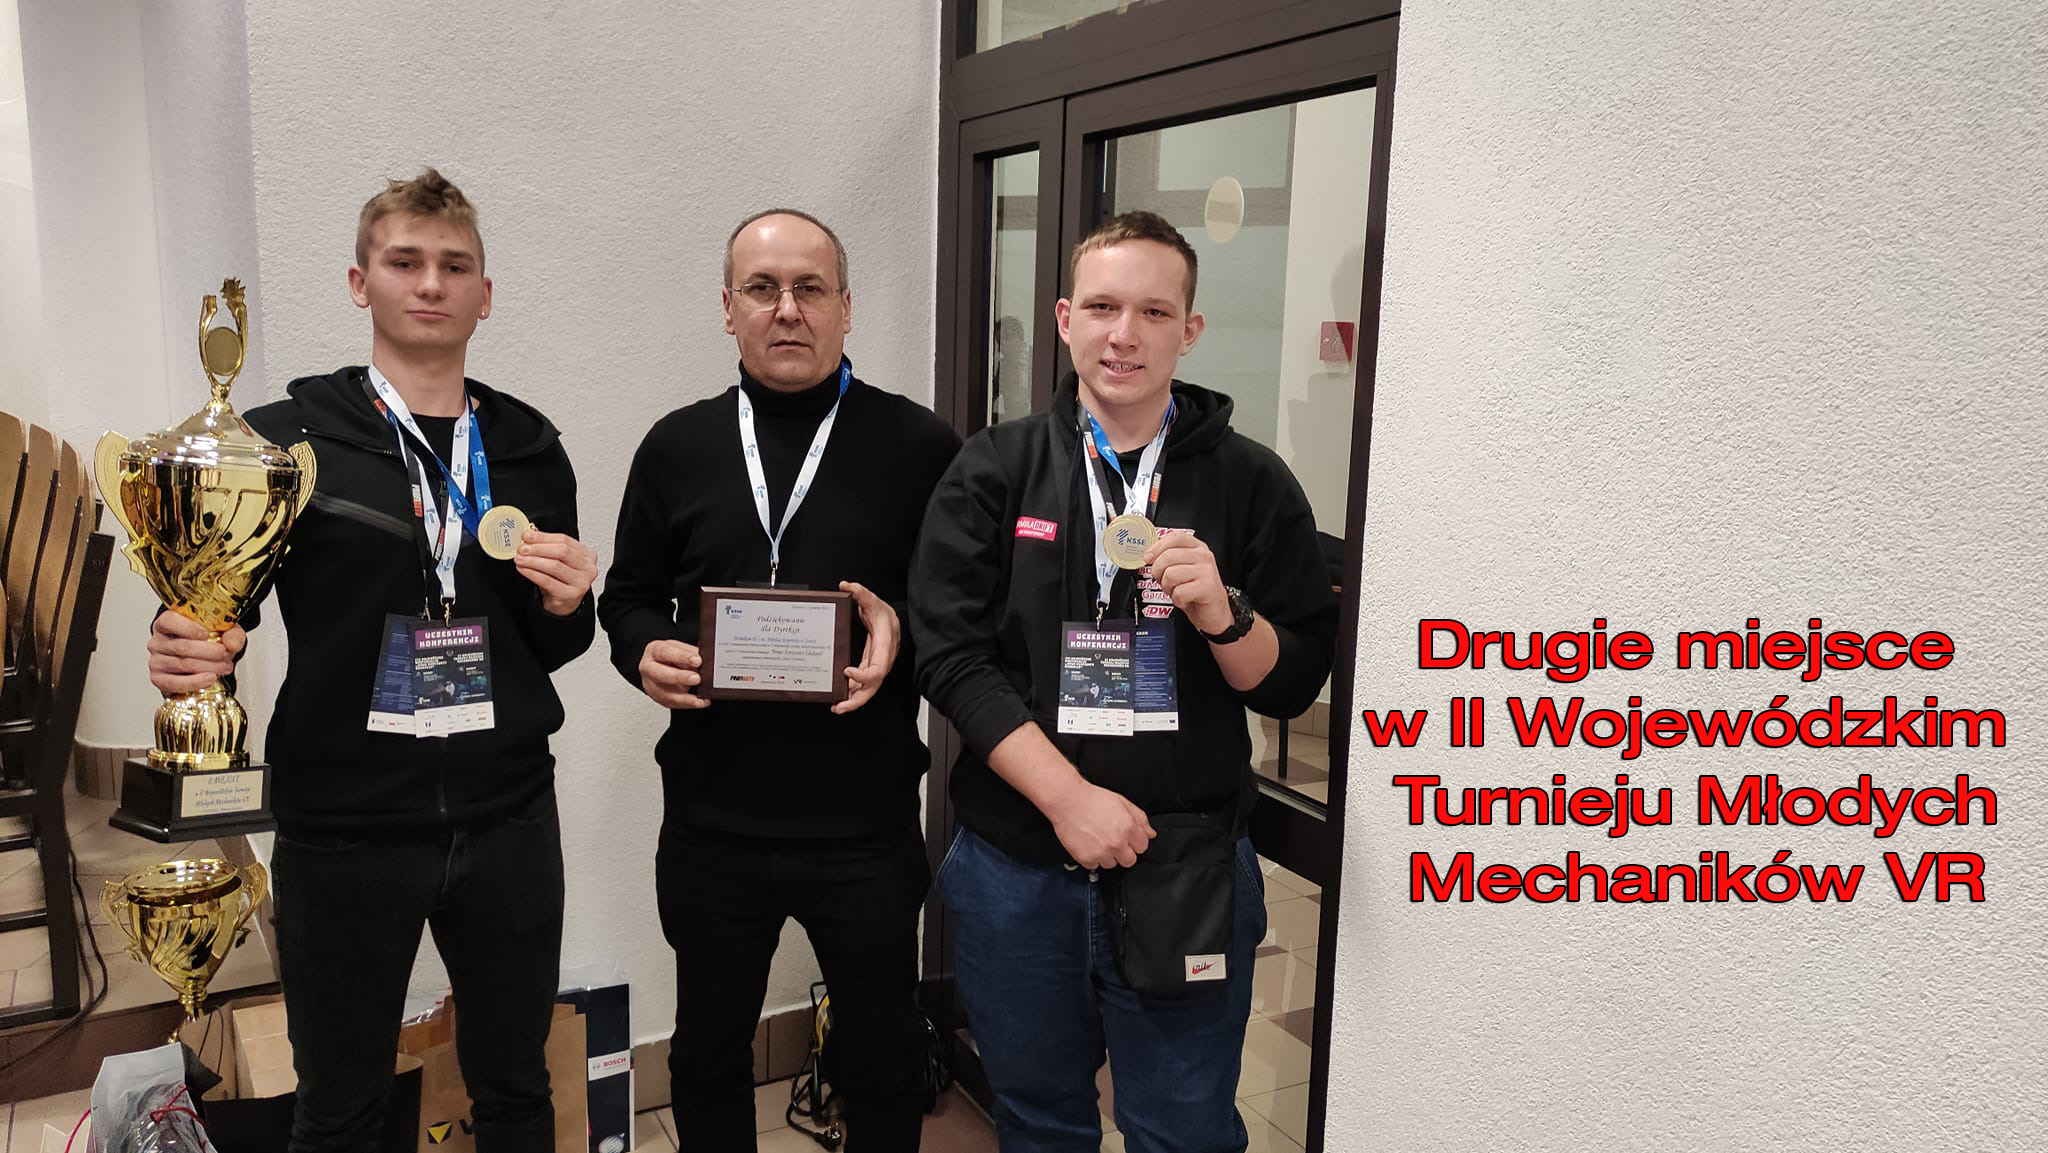 Drugie miejsce w II Wojewódzkim Turnieju Młodych Mechaników VR